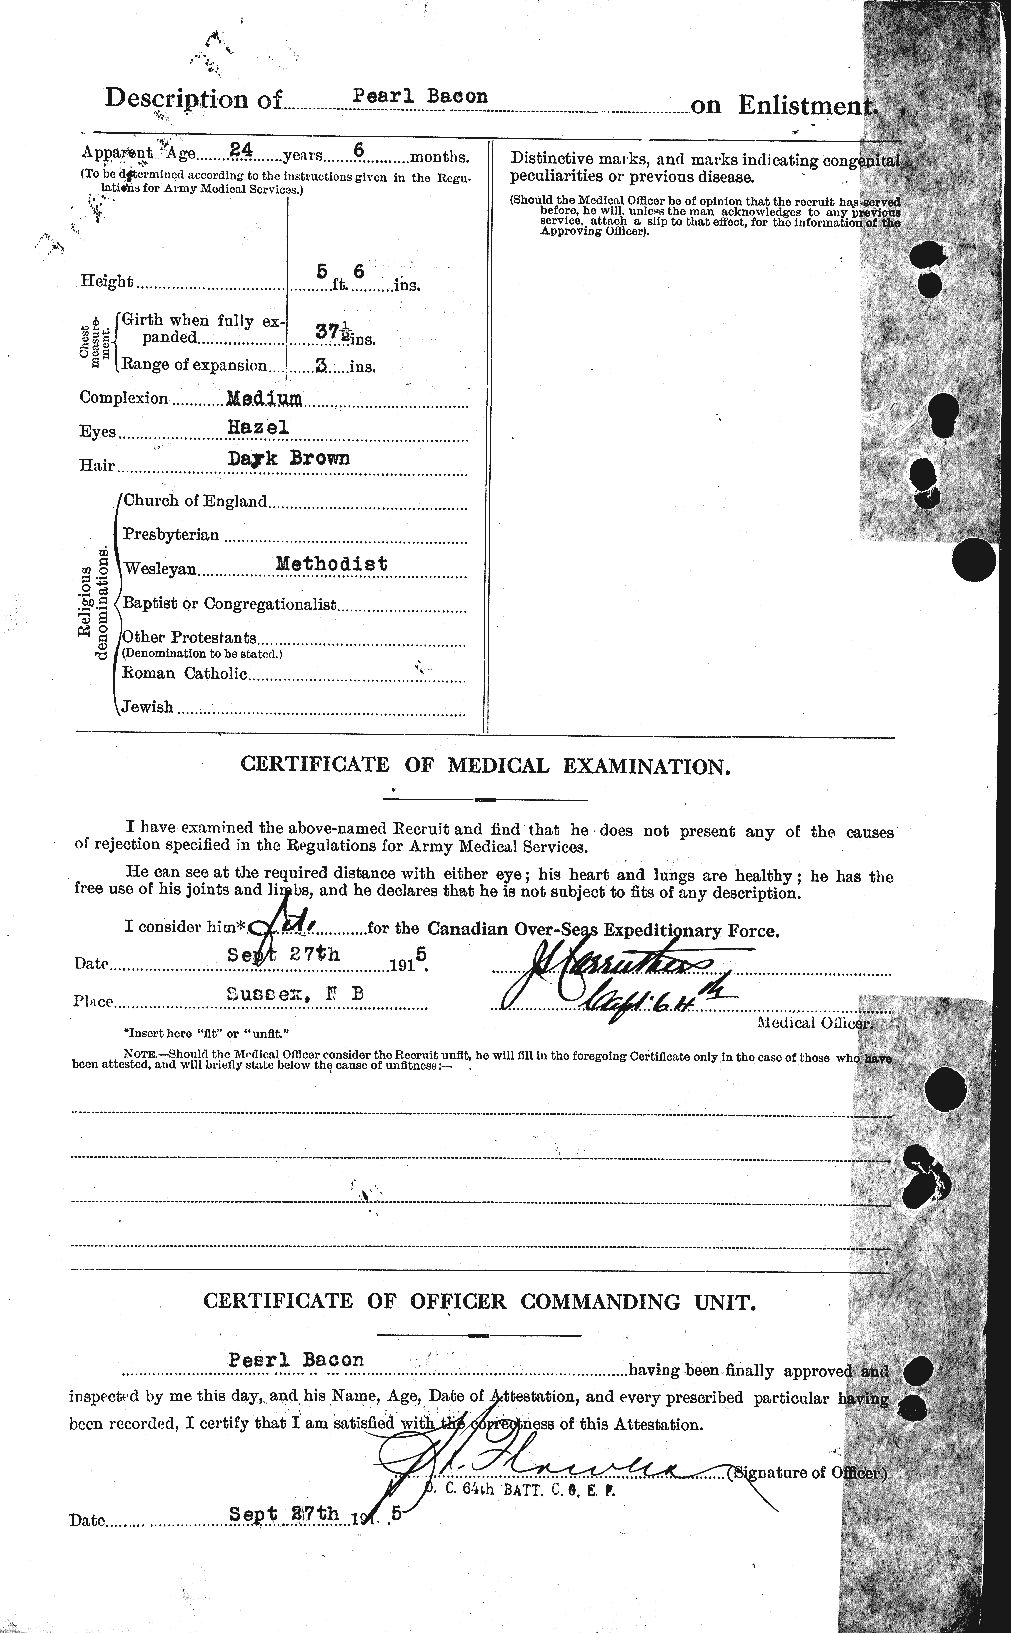 Dossiers du Personnel de la Première Guerre mondiale - CEC 217859b